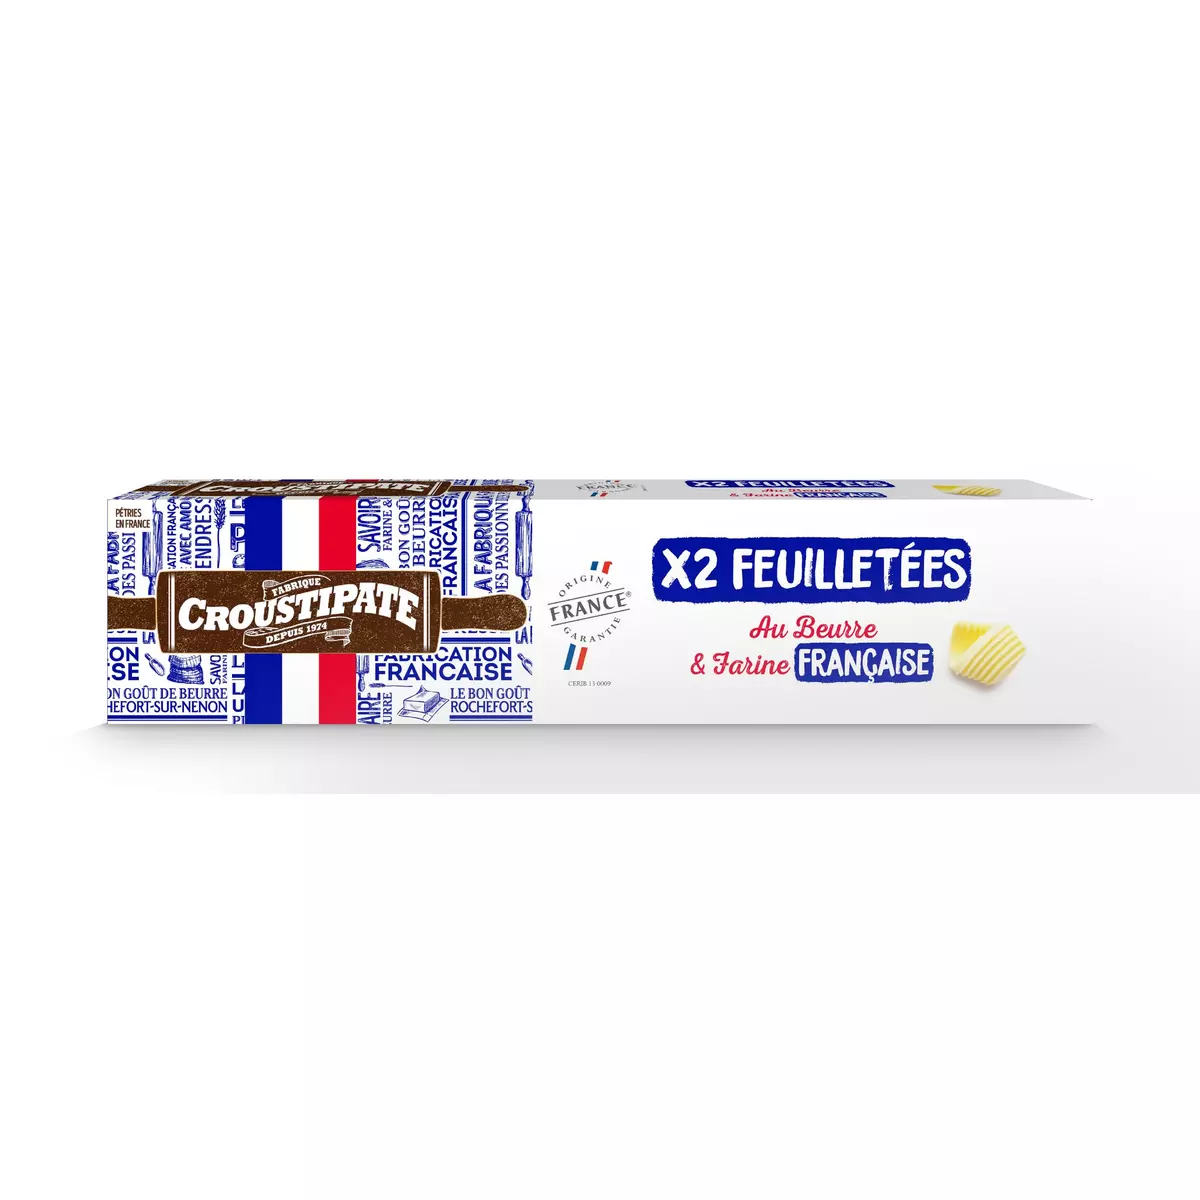 CROUSTIPATE Pâte feuilletées au beurre et farine Française  2 pièces 2x230g